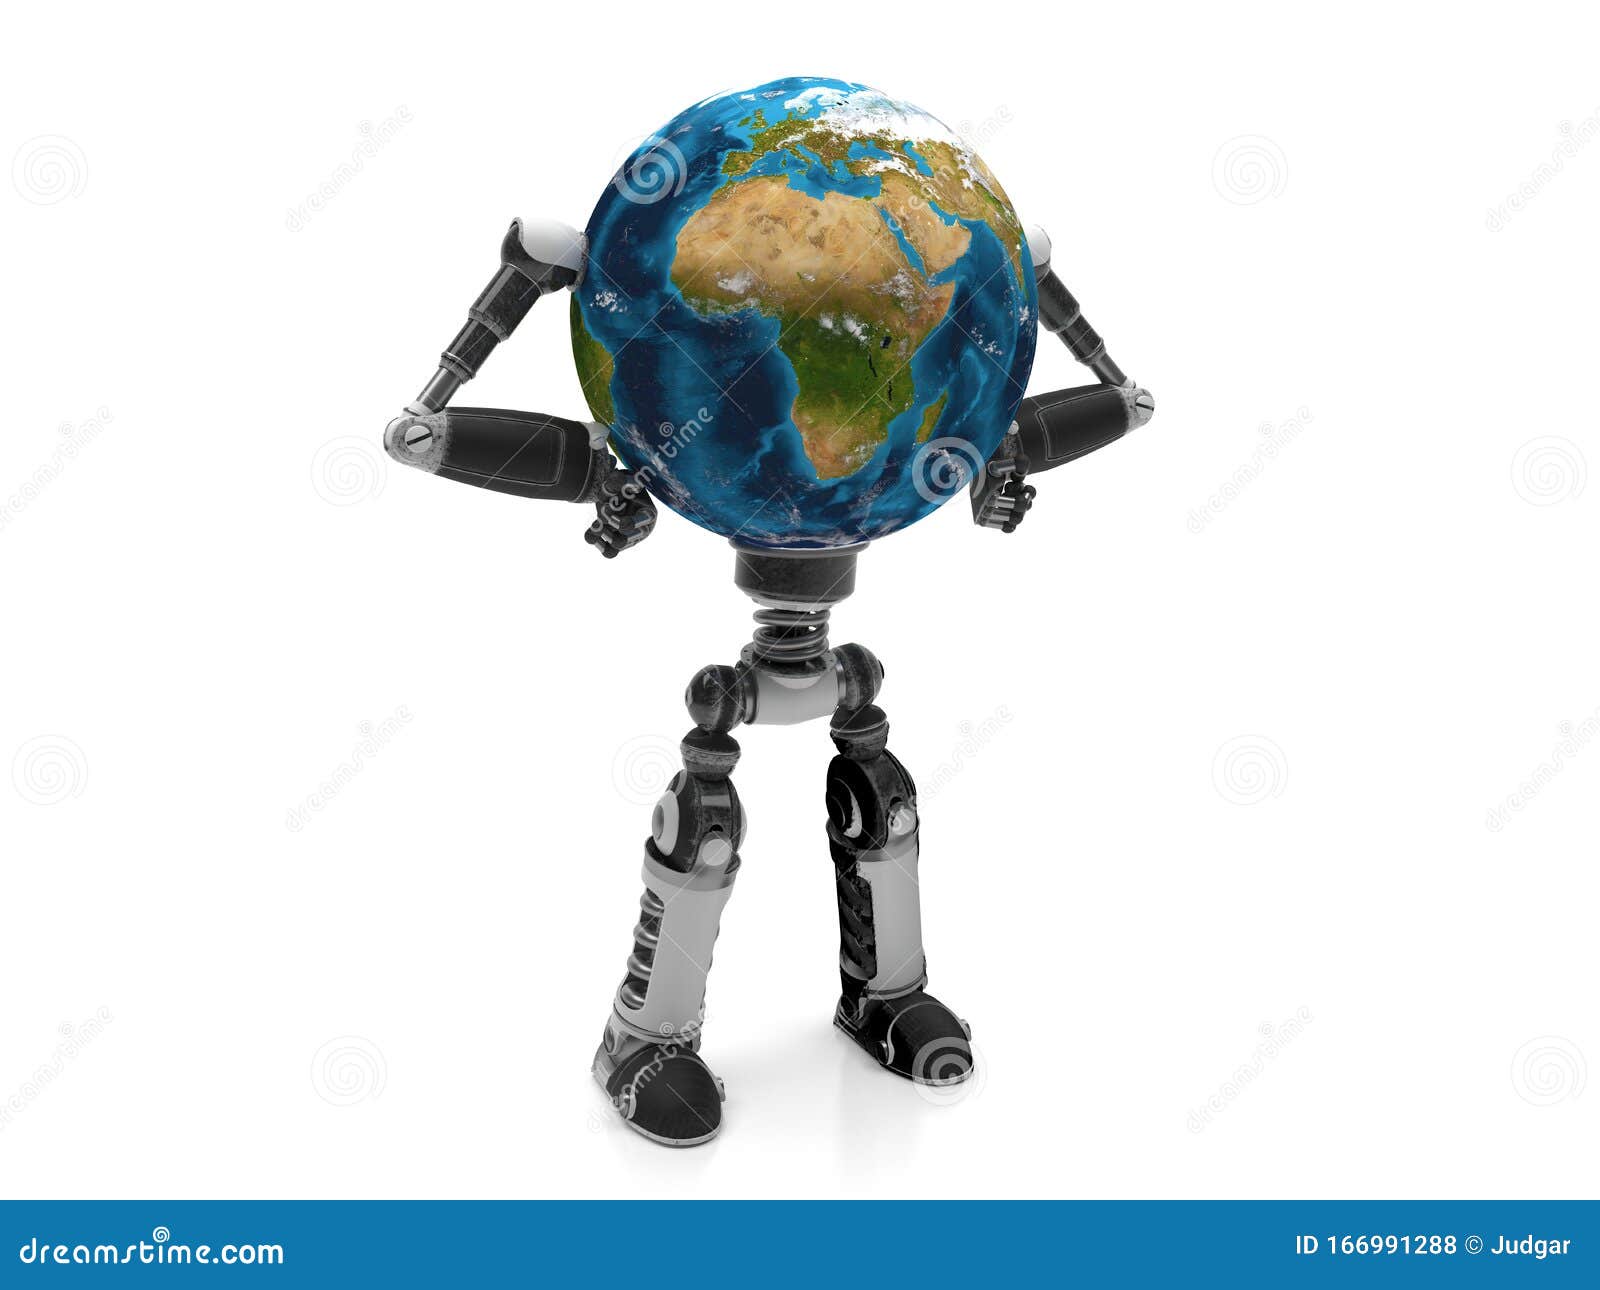 Robot (Robot): Hãy cùng khám phá thế giới của những chú robot thông minh và đáng yêu trong hình ảnh này! Chúng sẽ mang lại cho bạn những trải nghiệm tuyệt vời về công nghệ và sáng tạo.